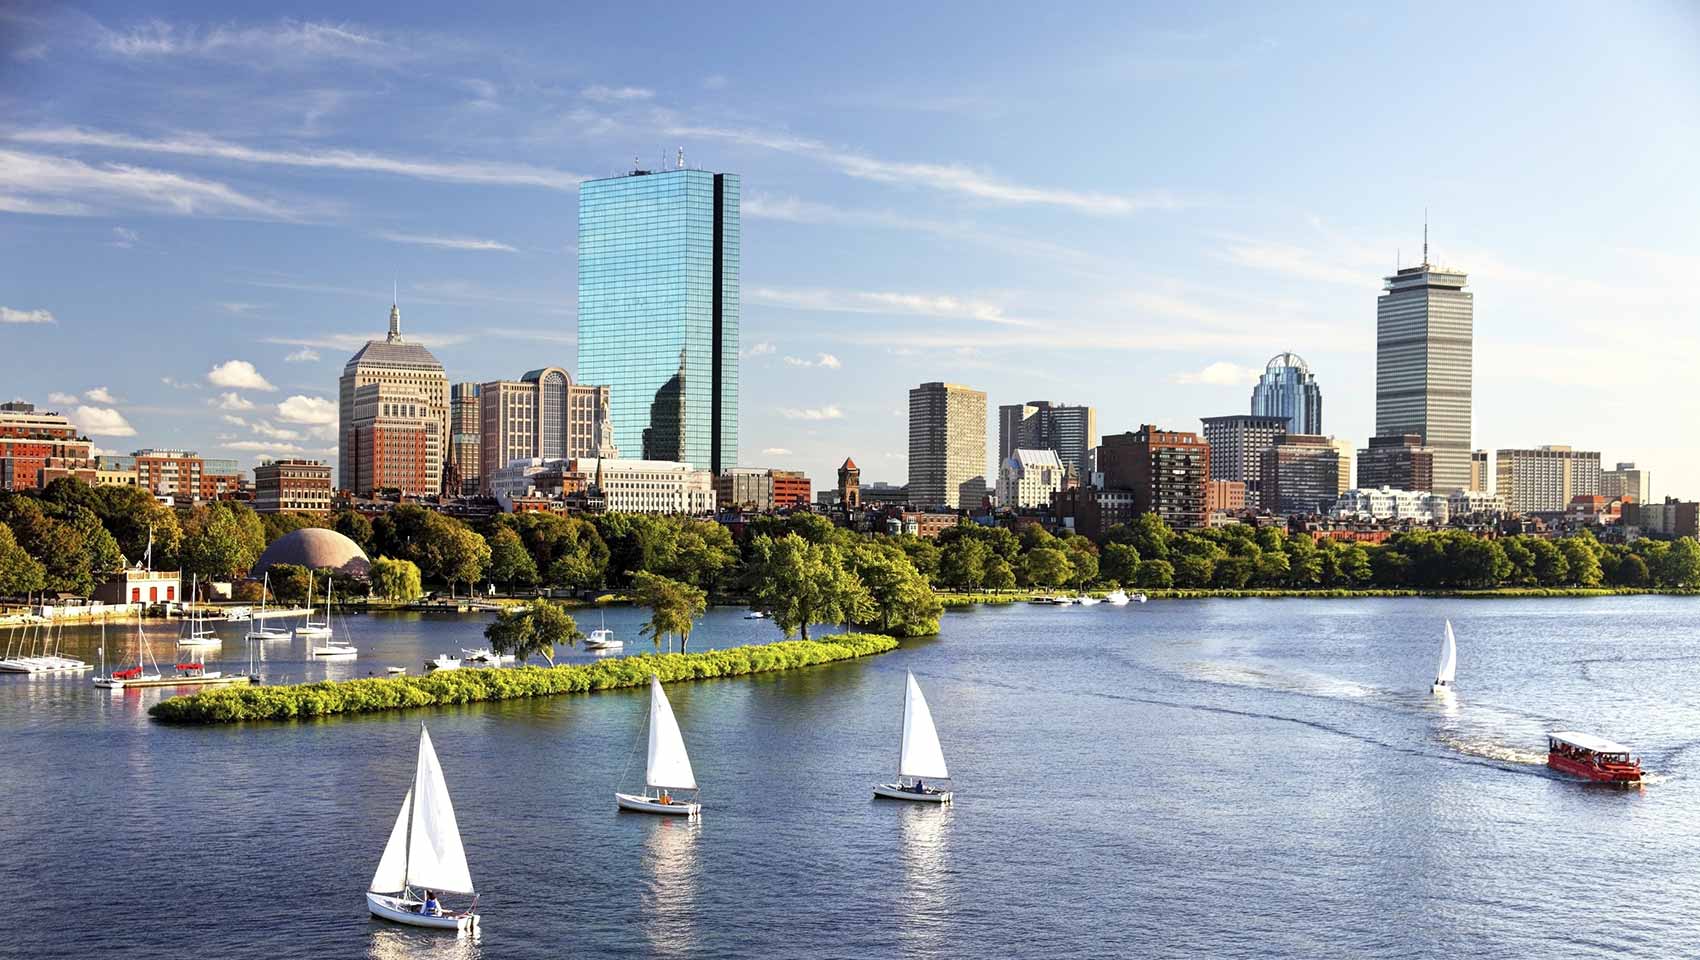 Charles river in boston